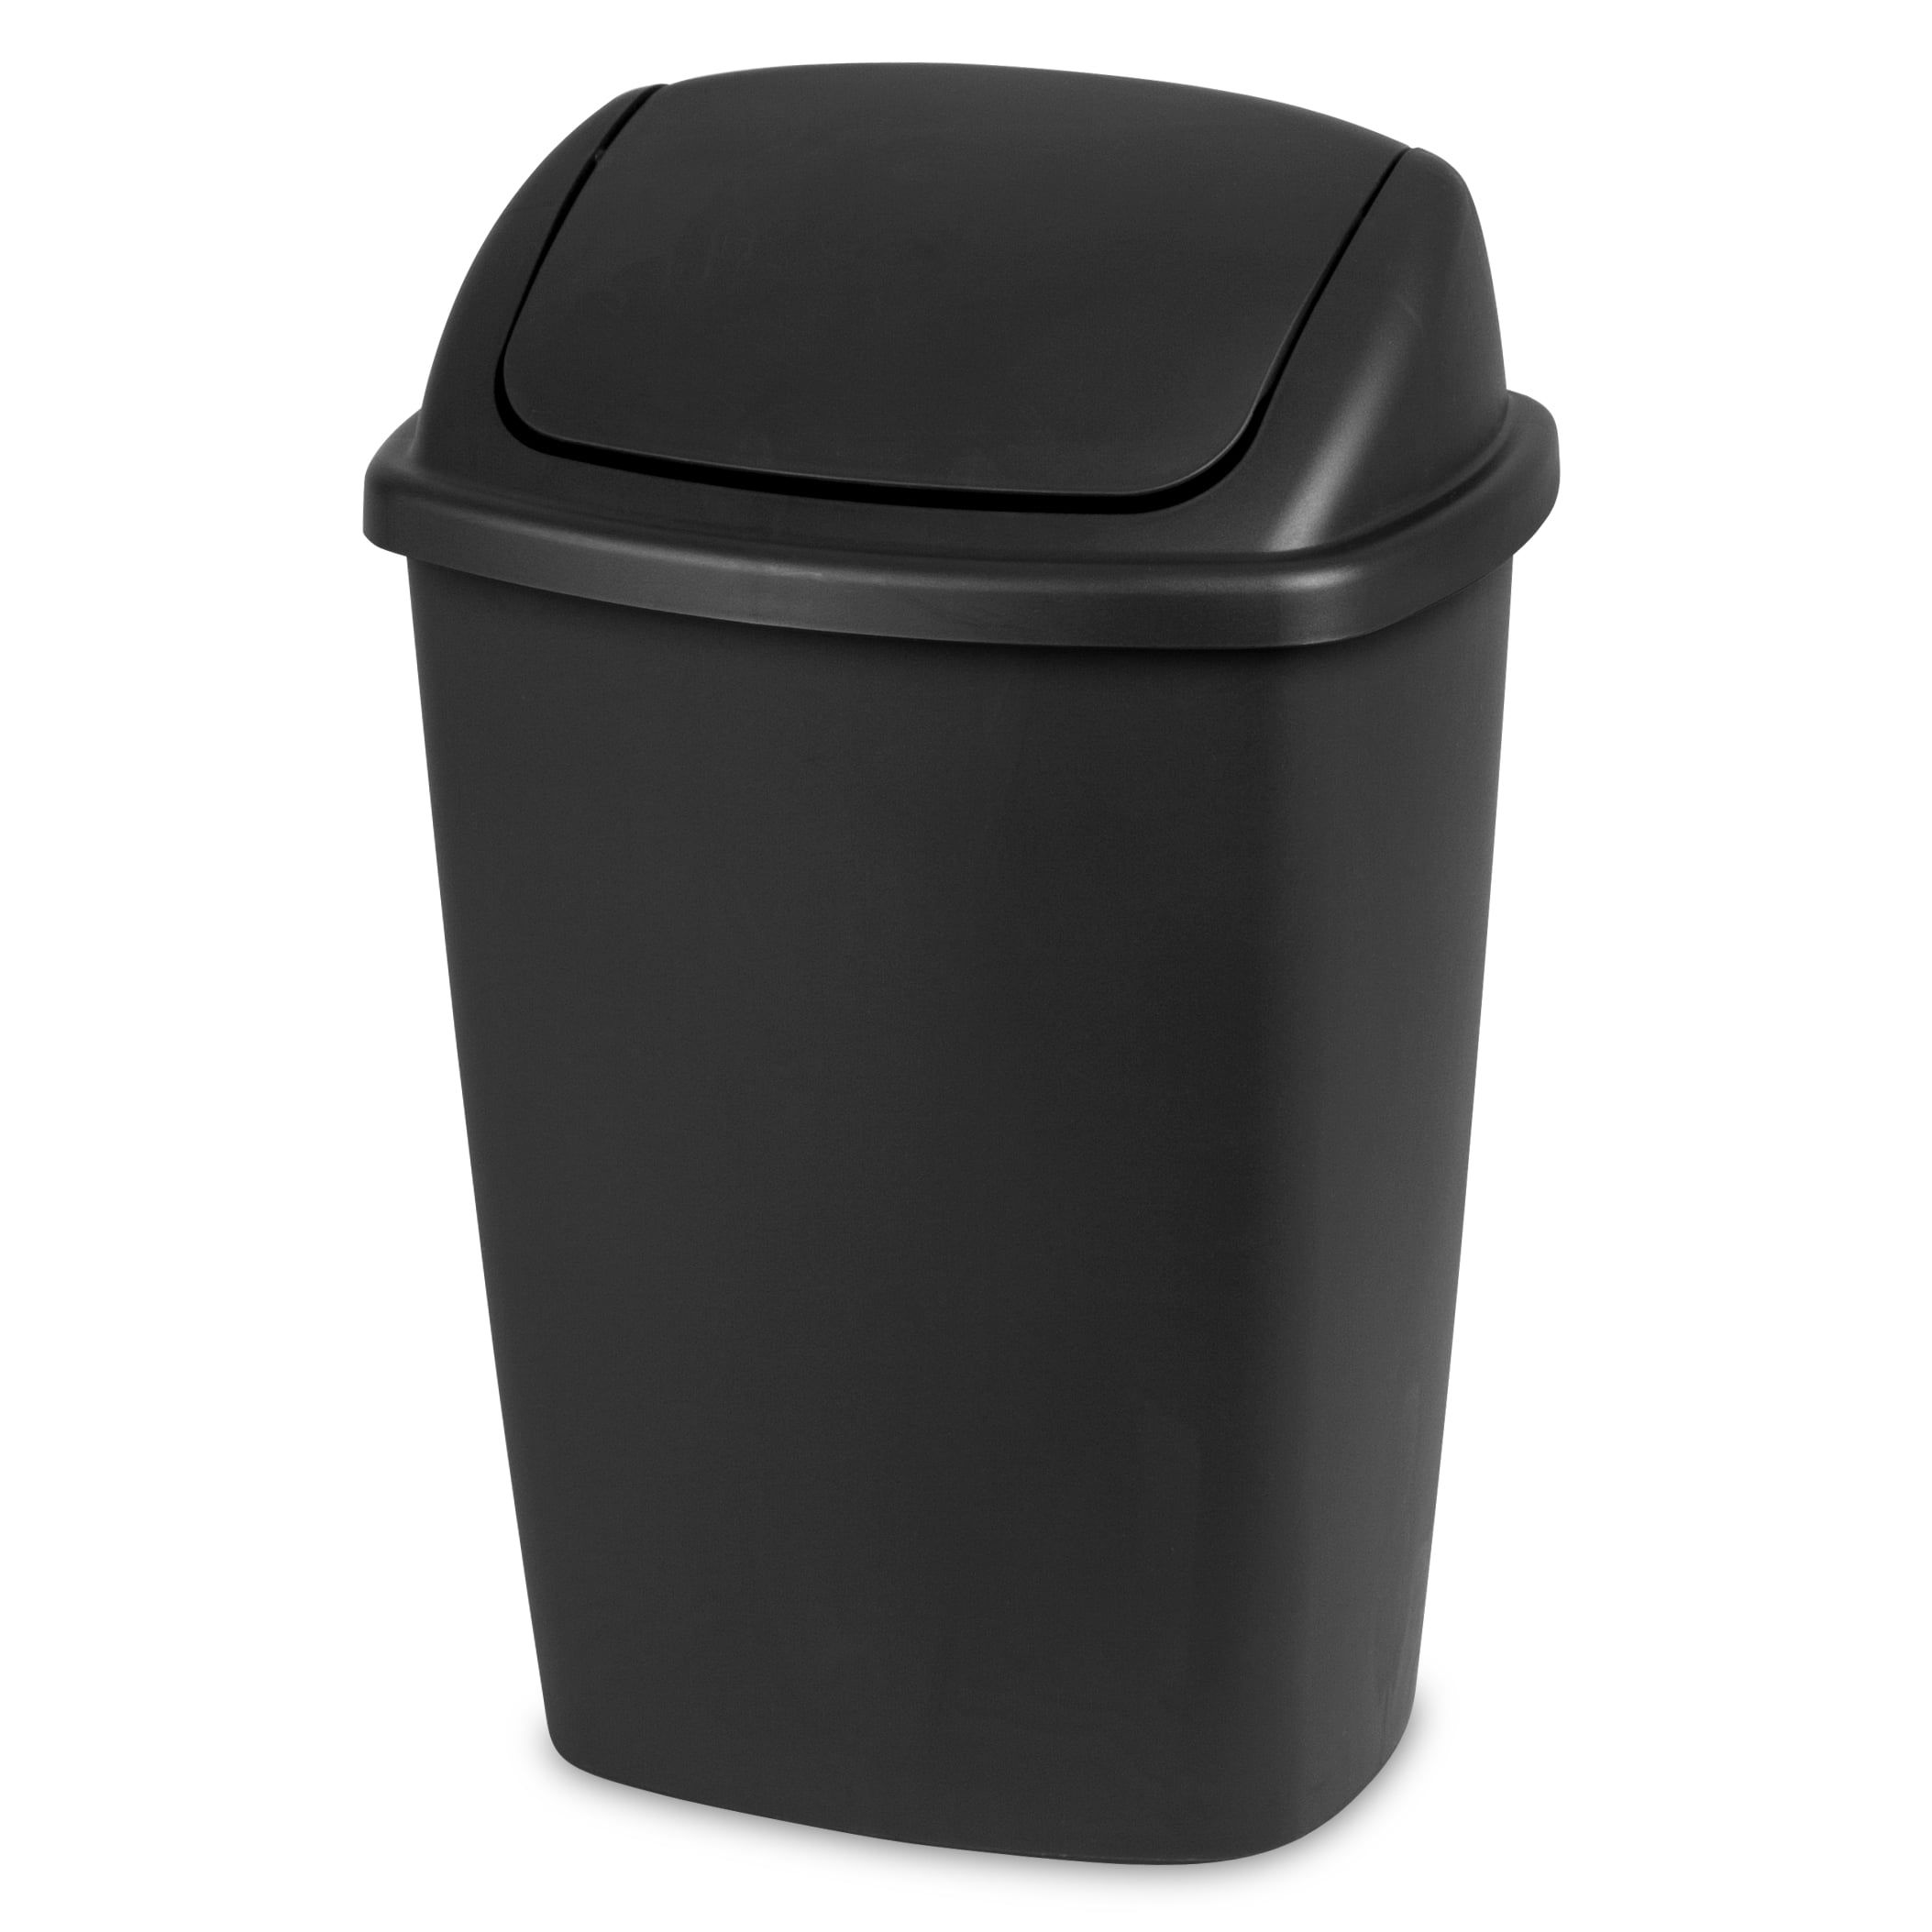 Sterilite 7.5 Gallon Trash Can, Plastic Swing Top Office Trash Can, Black